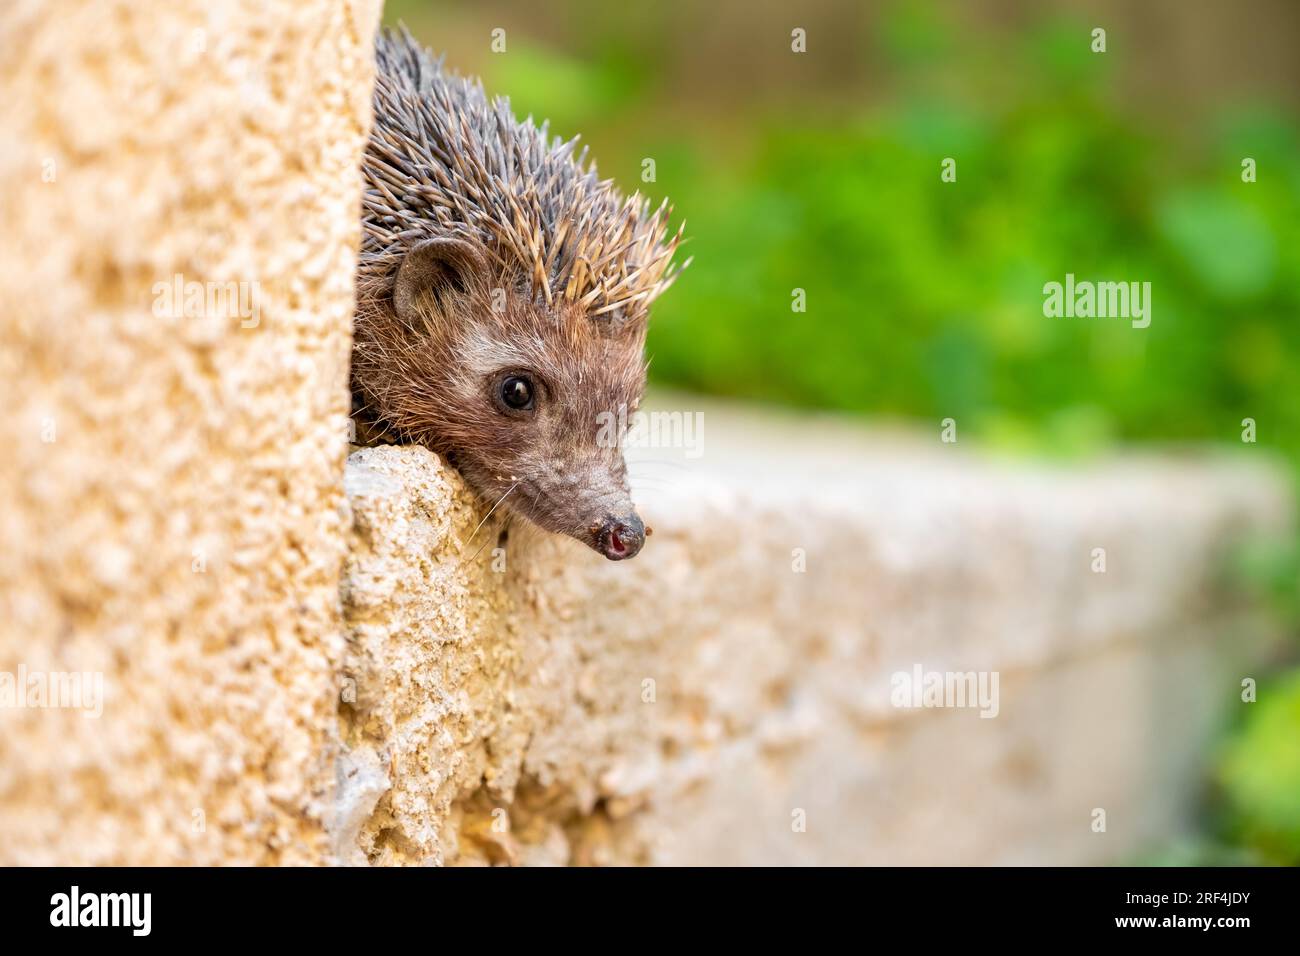 Hedgehog appréciant sa vie de différentes manières Banque D'Images